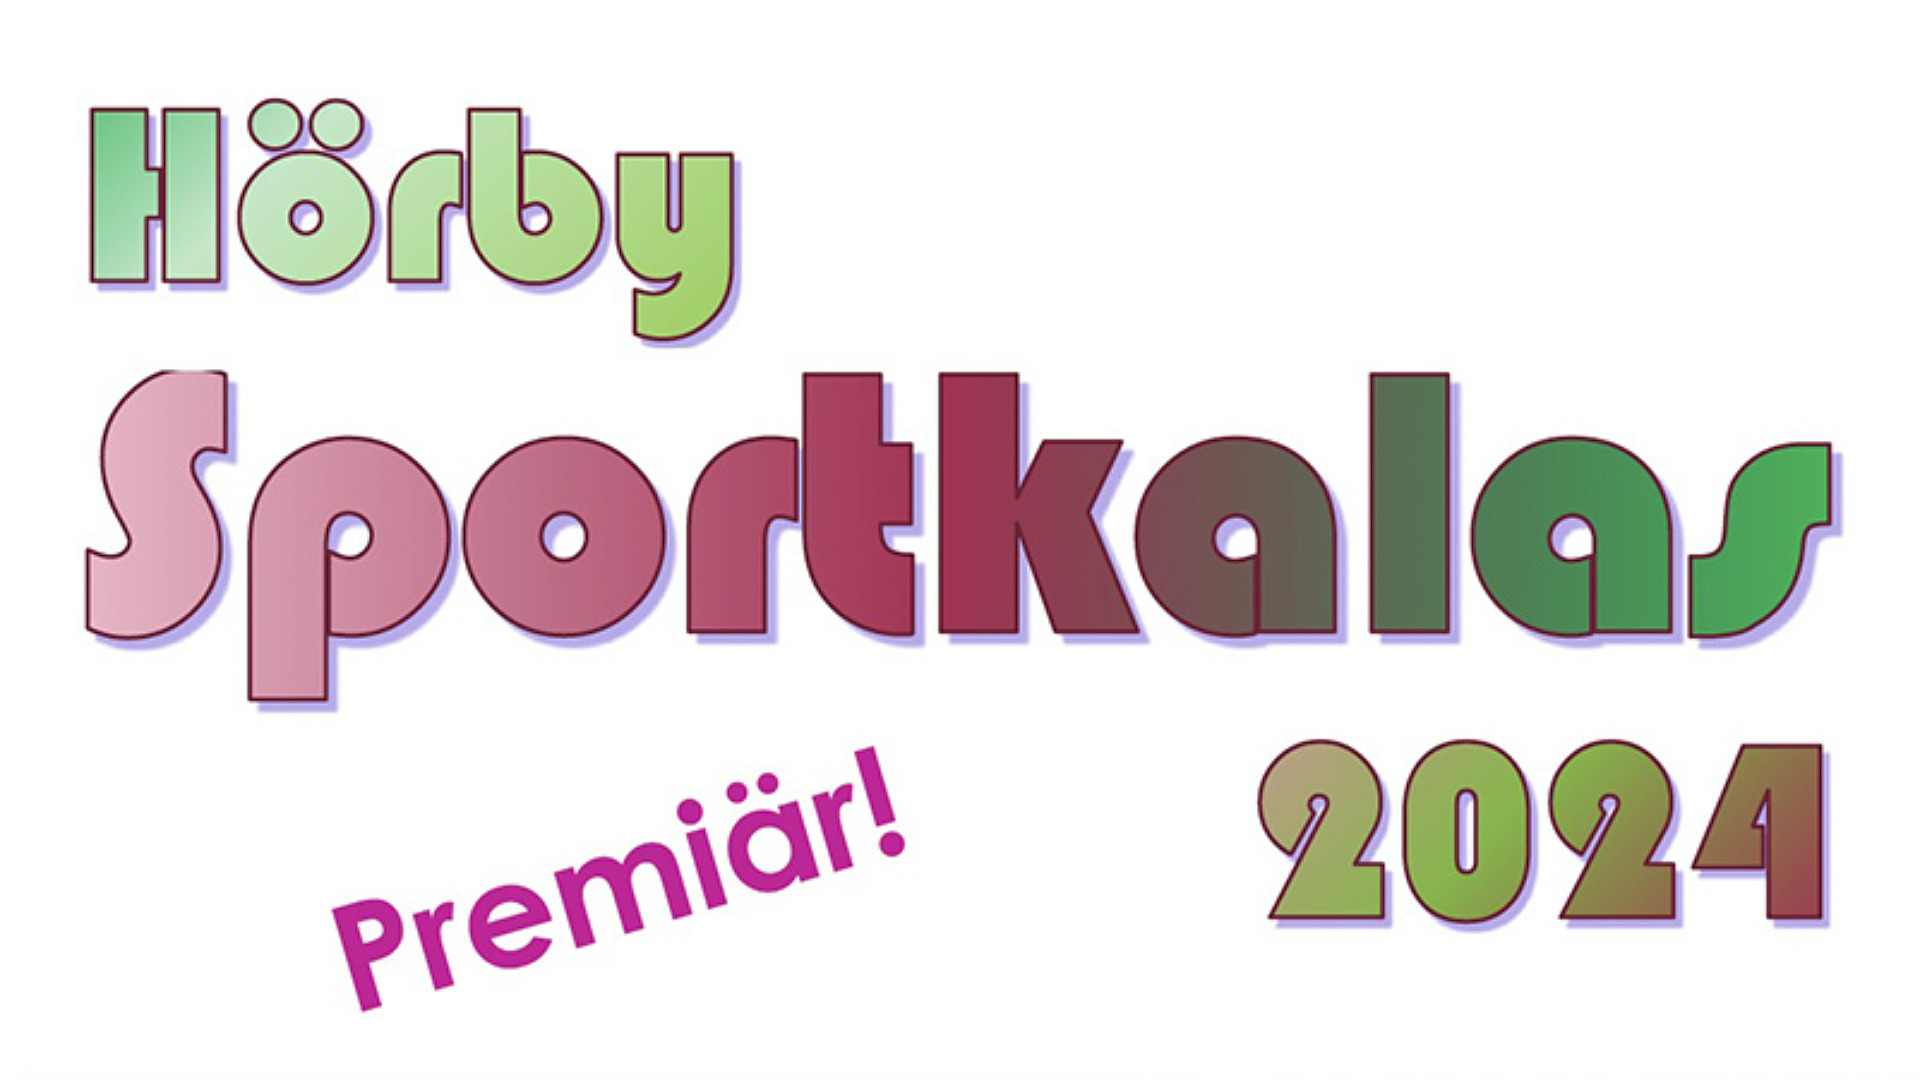 Loggo för Hörby Sportkalas och texten "Premiär!"